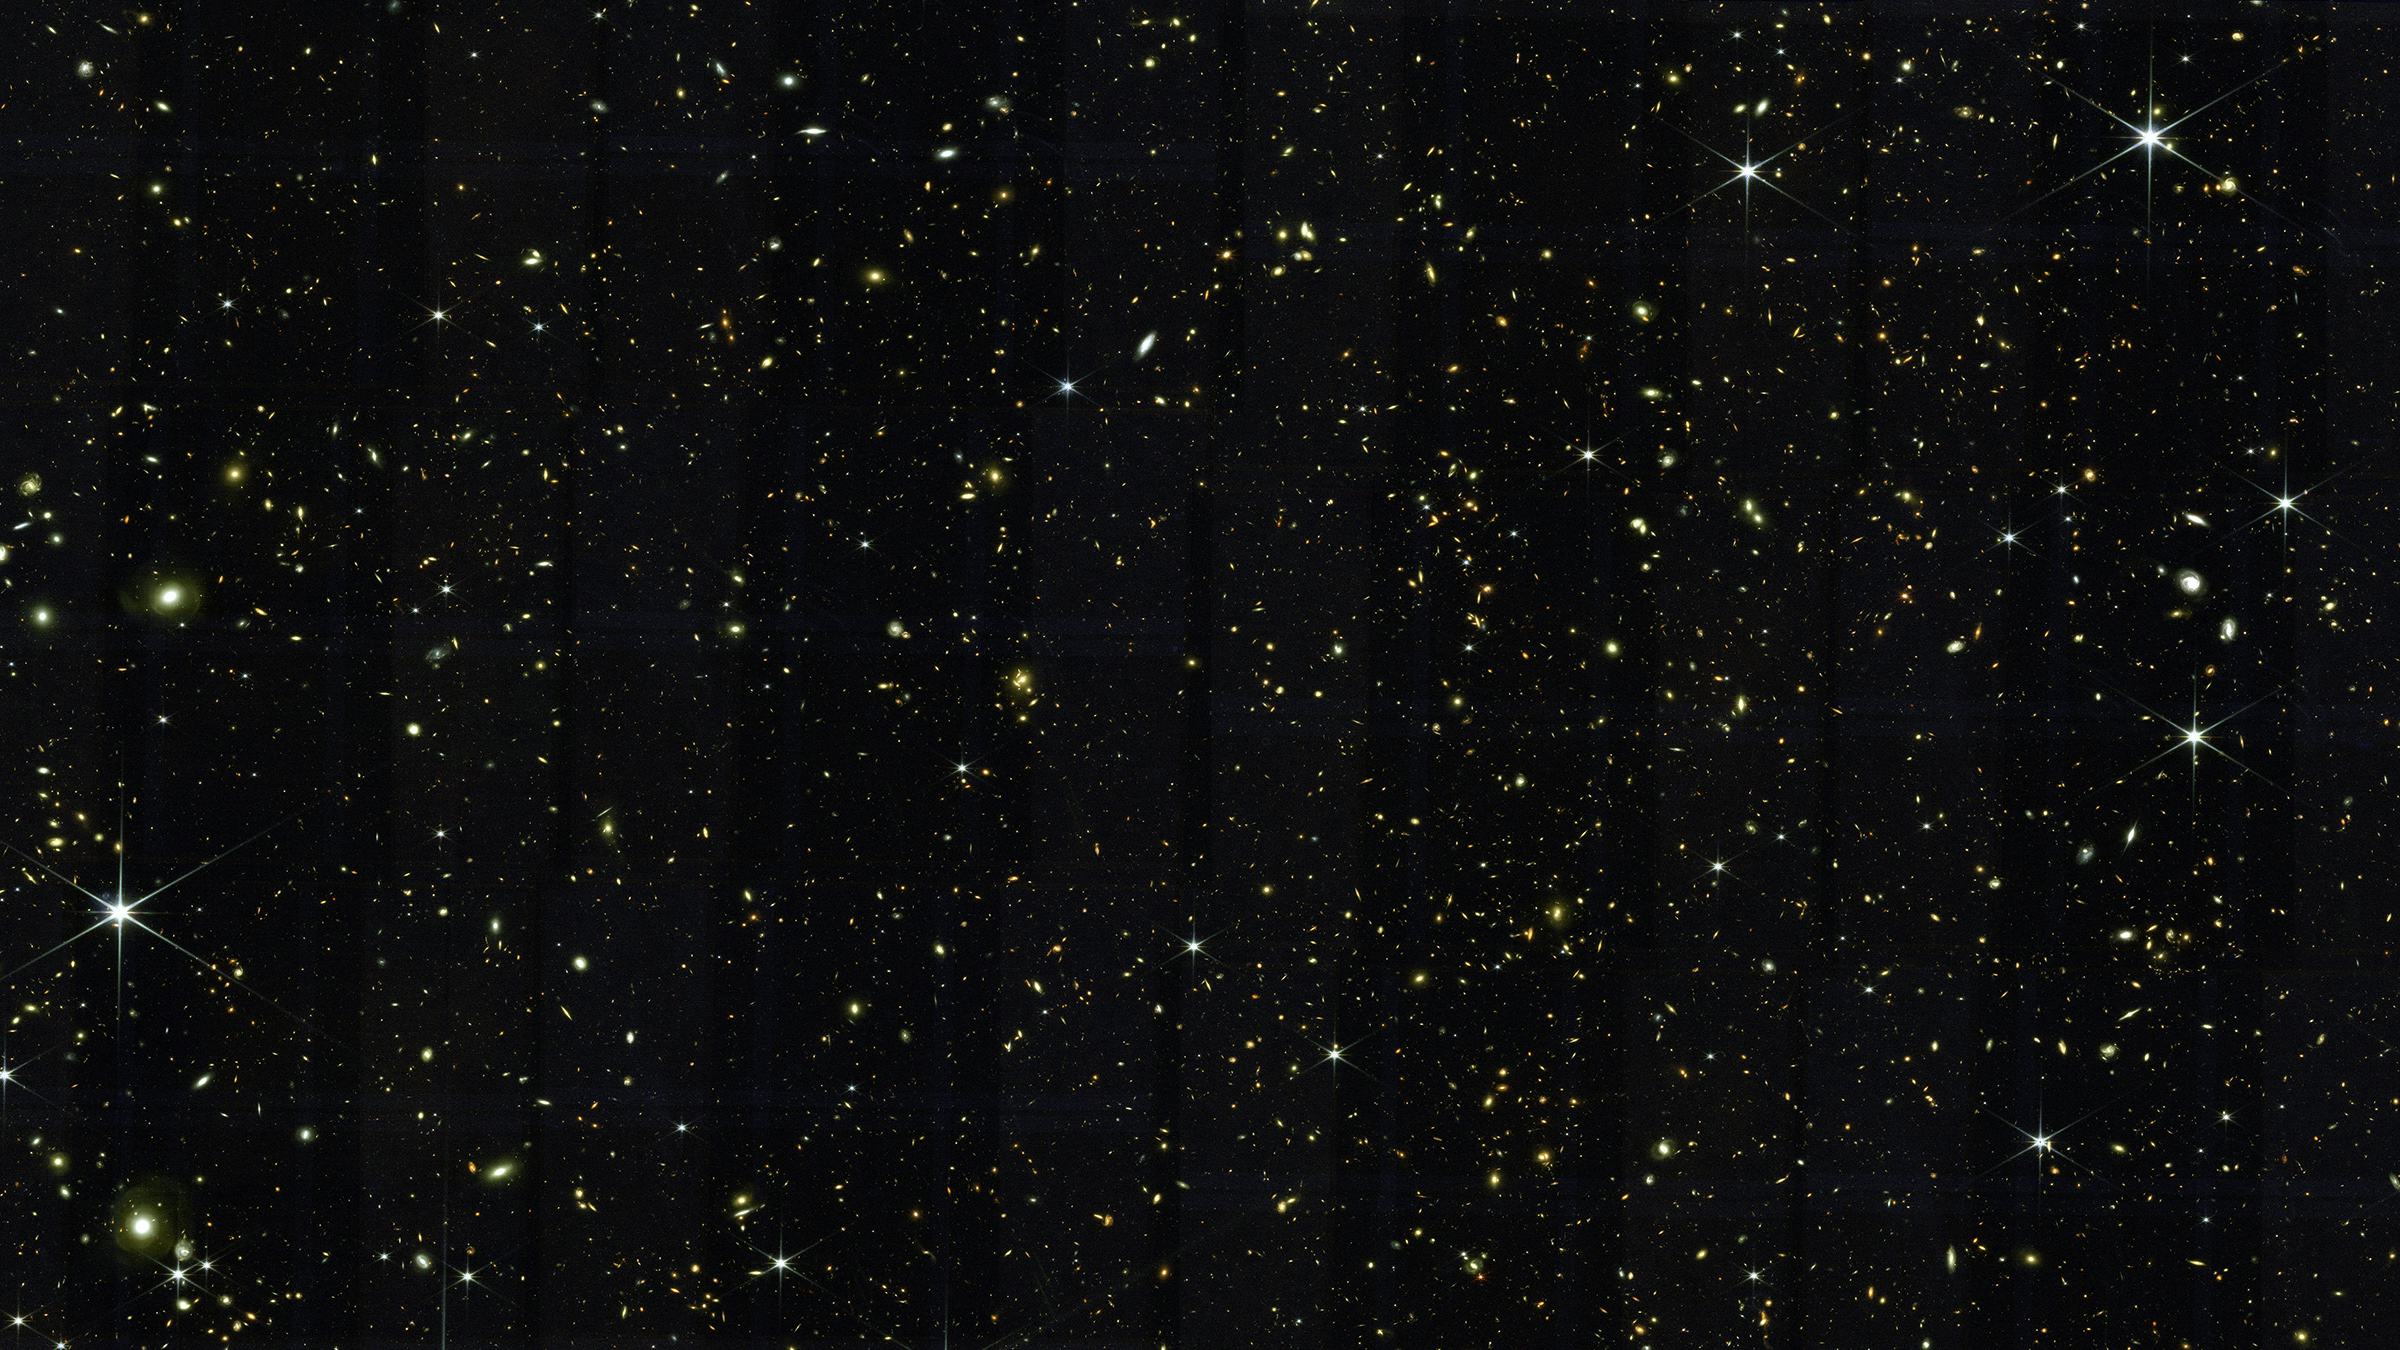 A field of stars